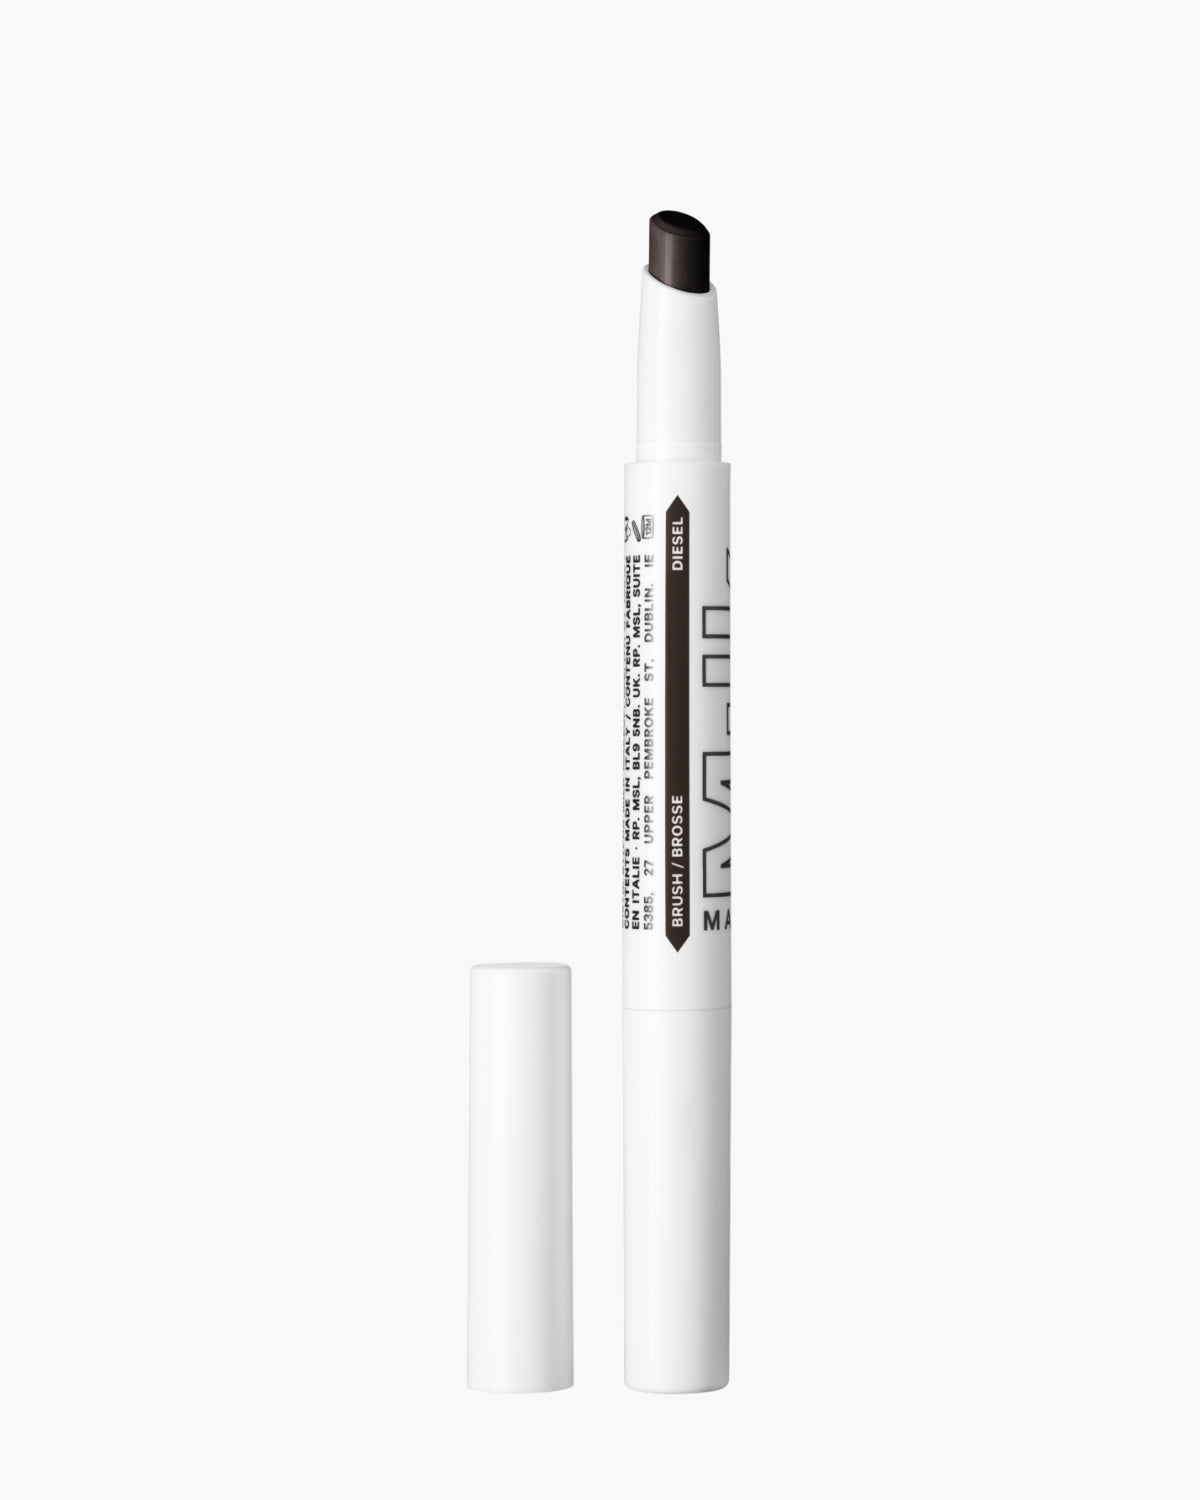 KUSH Brow Shadow Stick Waterproof Eyebrow Pencil Diesel | Milk Makeup